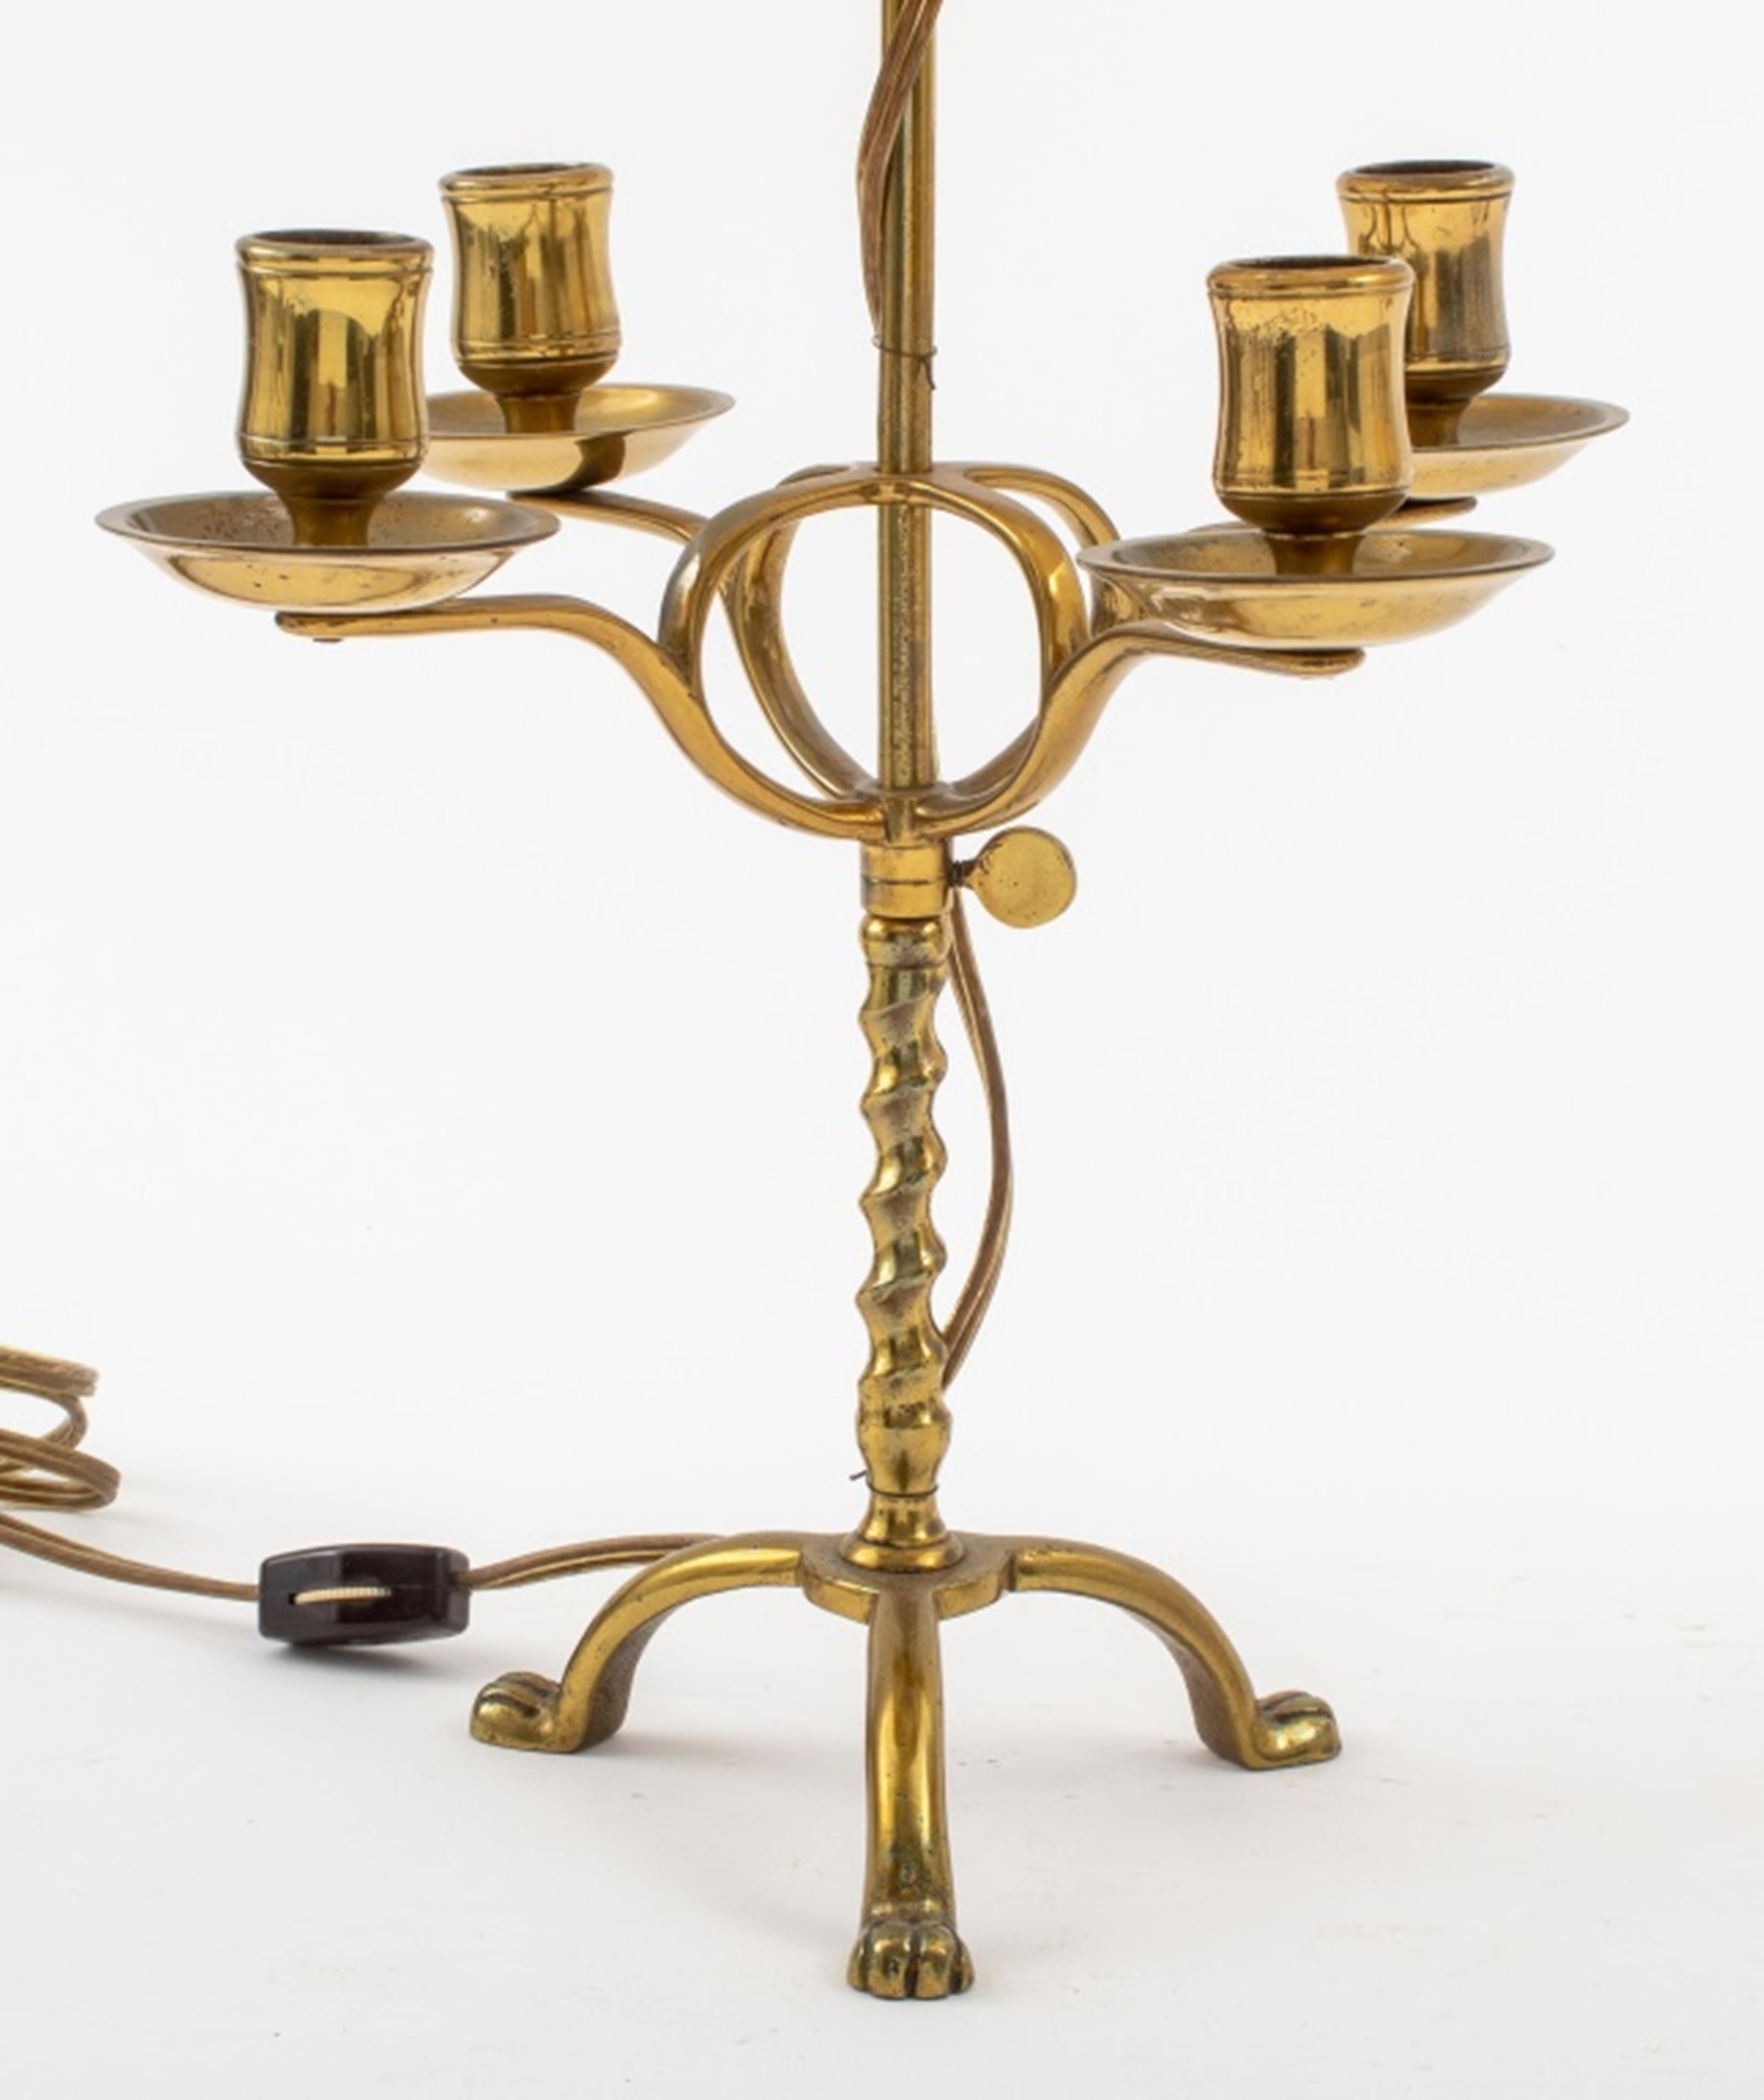 Ein Paar Messinglampen mit vier Armen für Kerzen, später ergänzt durch zwei Fassungen für Glühbirnen, ungemarkt. 
Abmessungen: 21.5